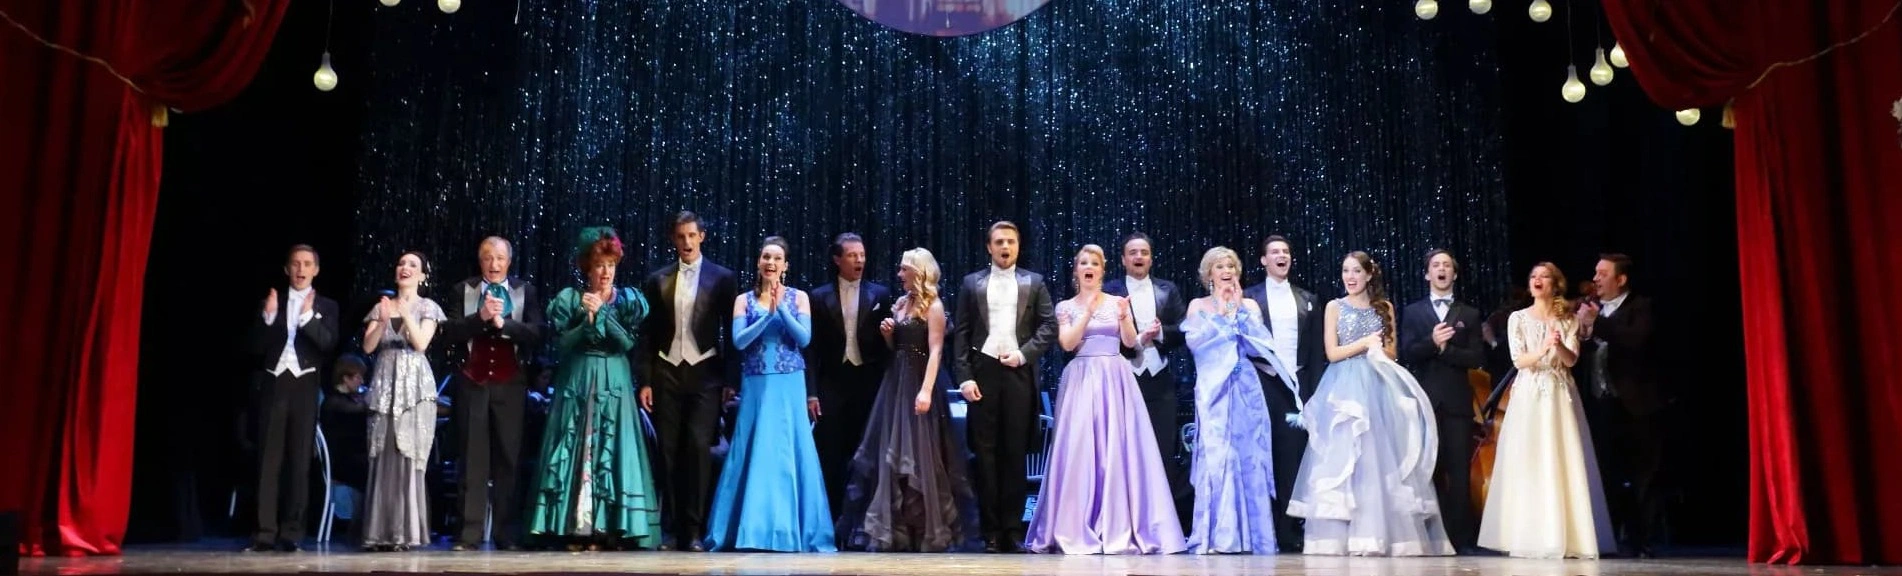 Звезды оперетты Санкт-Петербурга в осеннем концерте